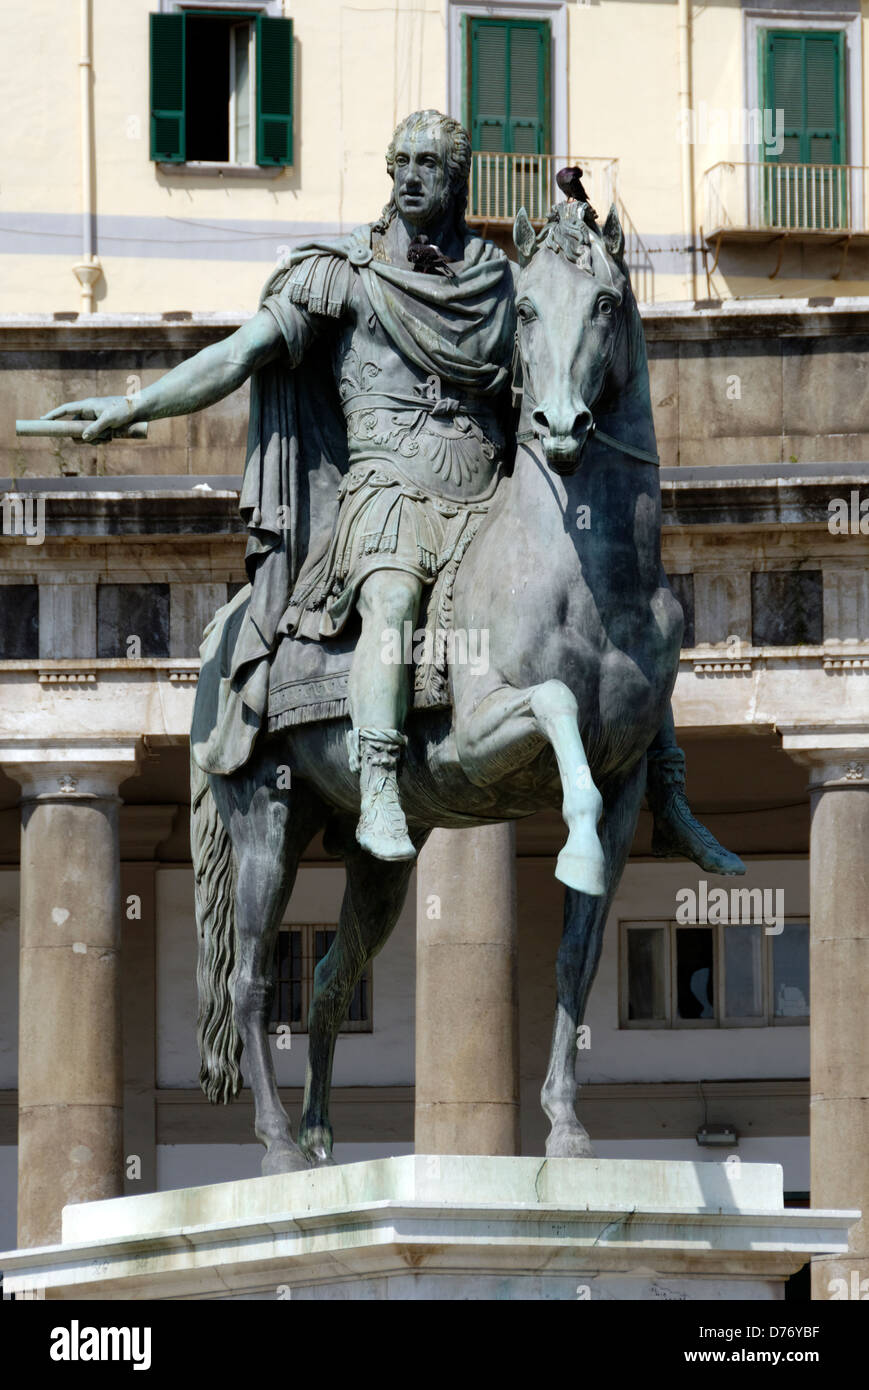 Nápoles. Italia. Monumento ecuestre dedicado al rey Carlos III de Borbón en frente de la iglesia de San Francesco di Paola. Foto de stock